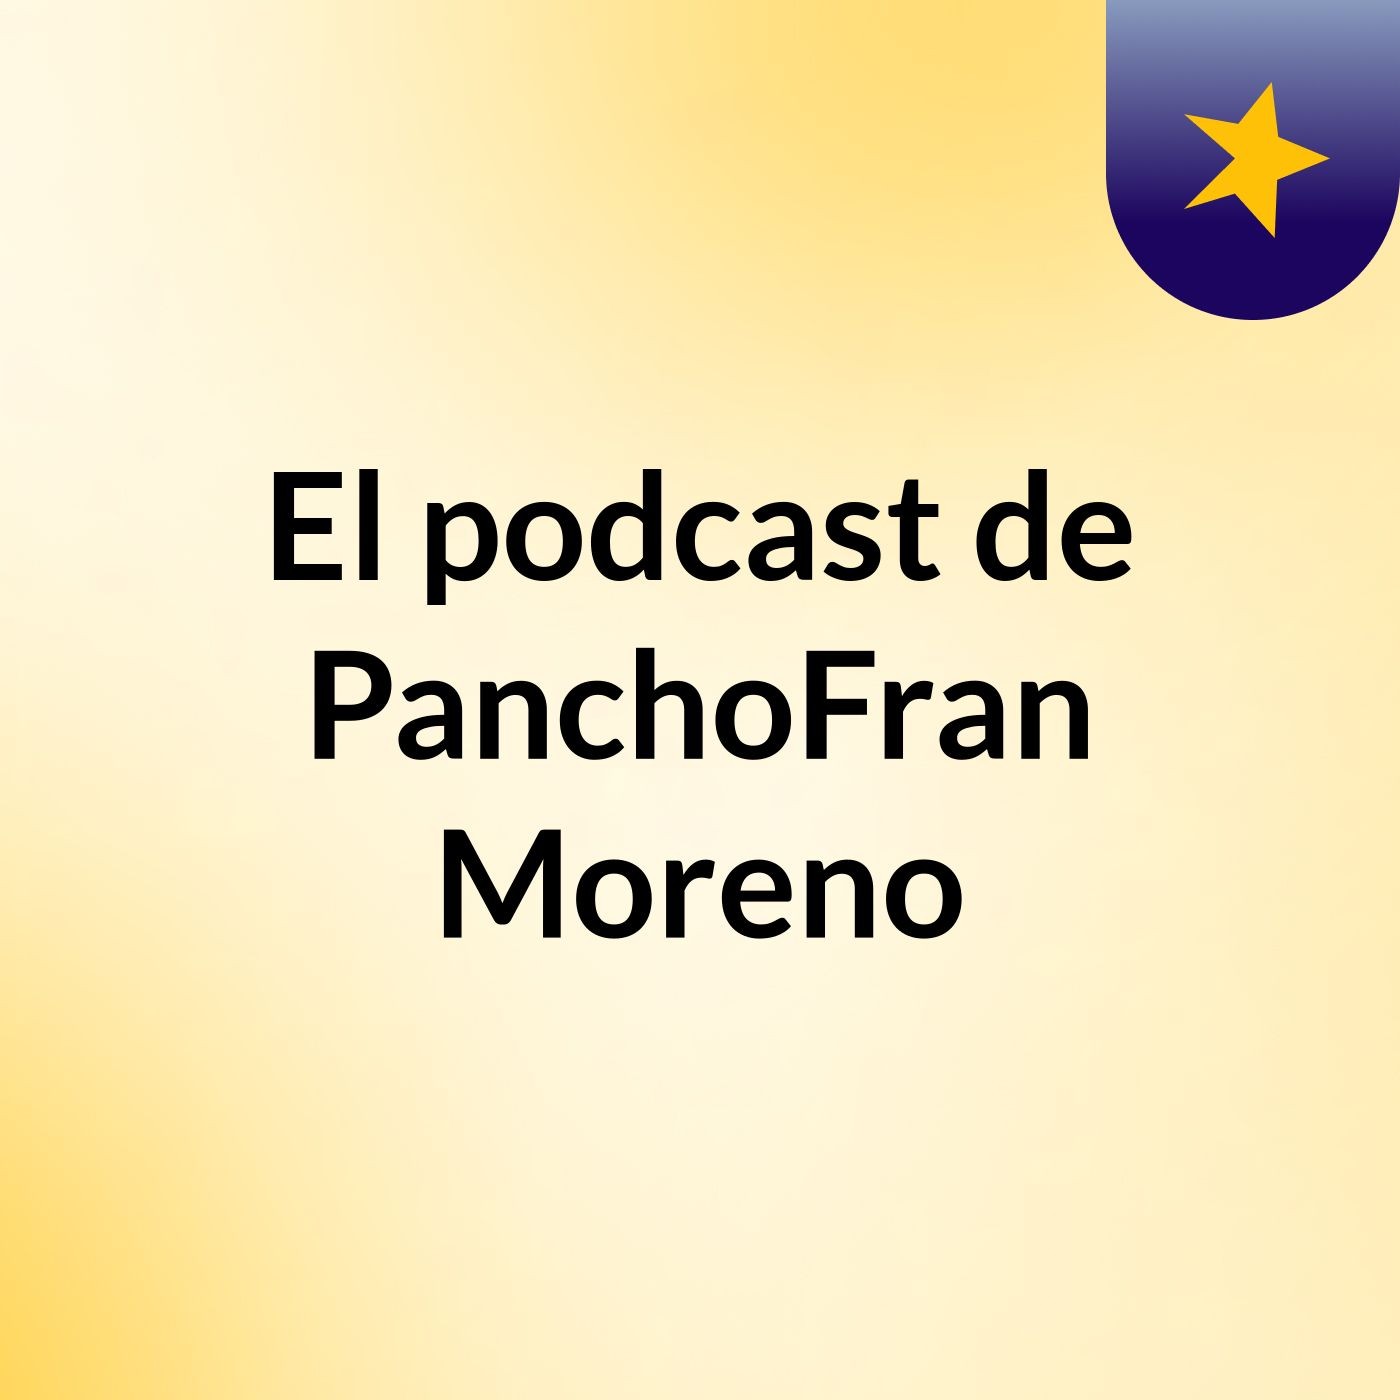 Episodio 5 - El podcast de PanchoFran Moreno